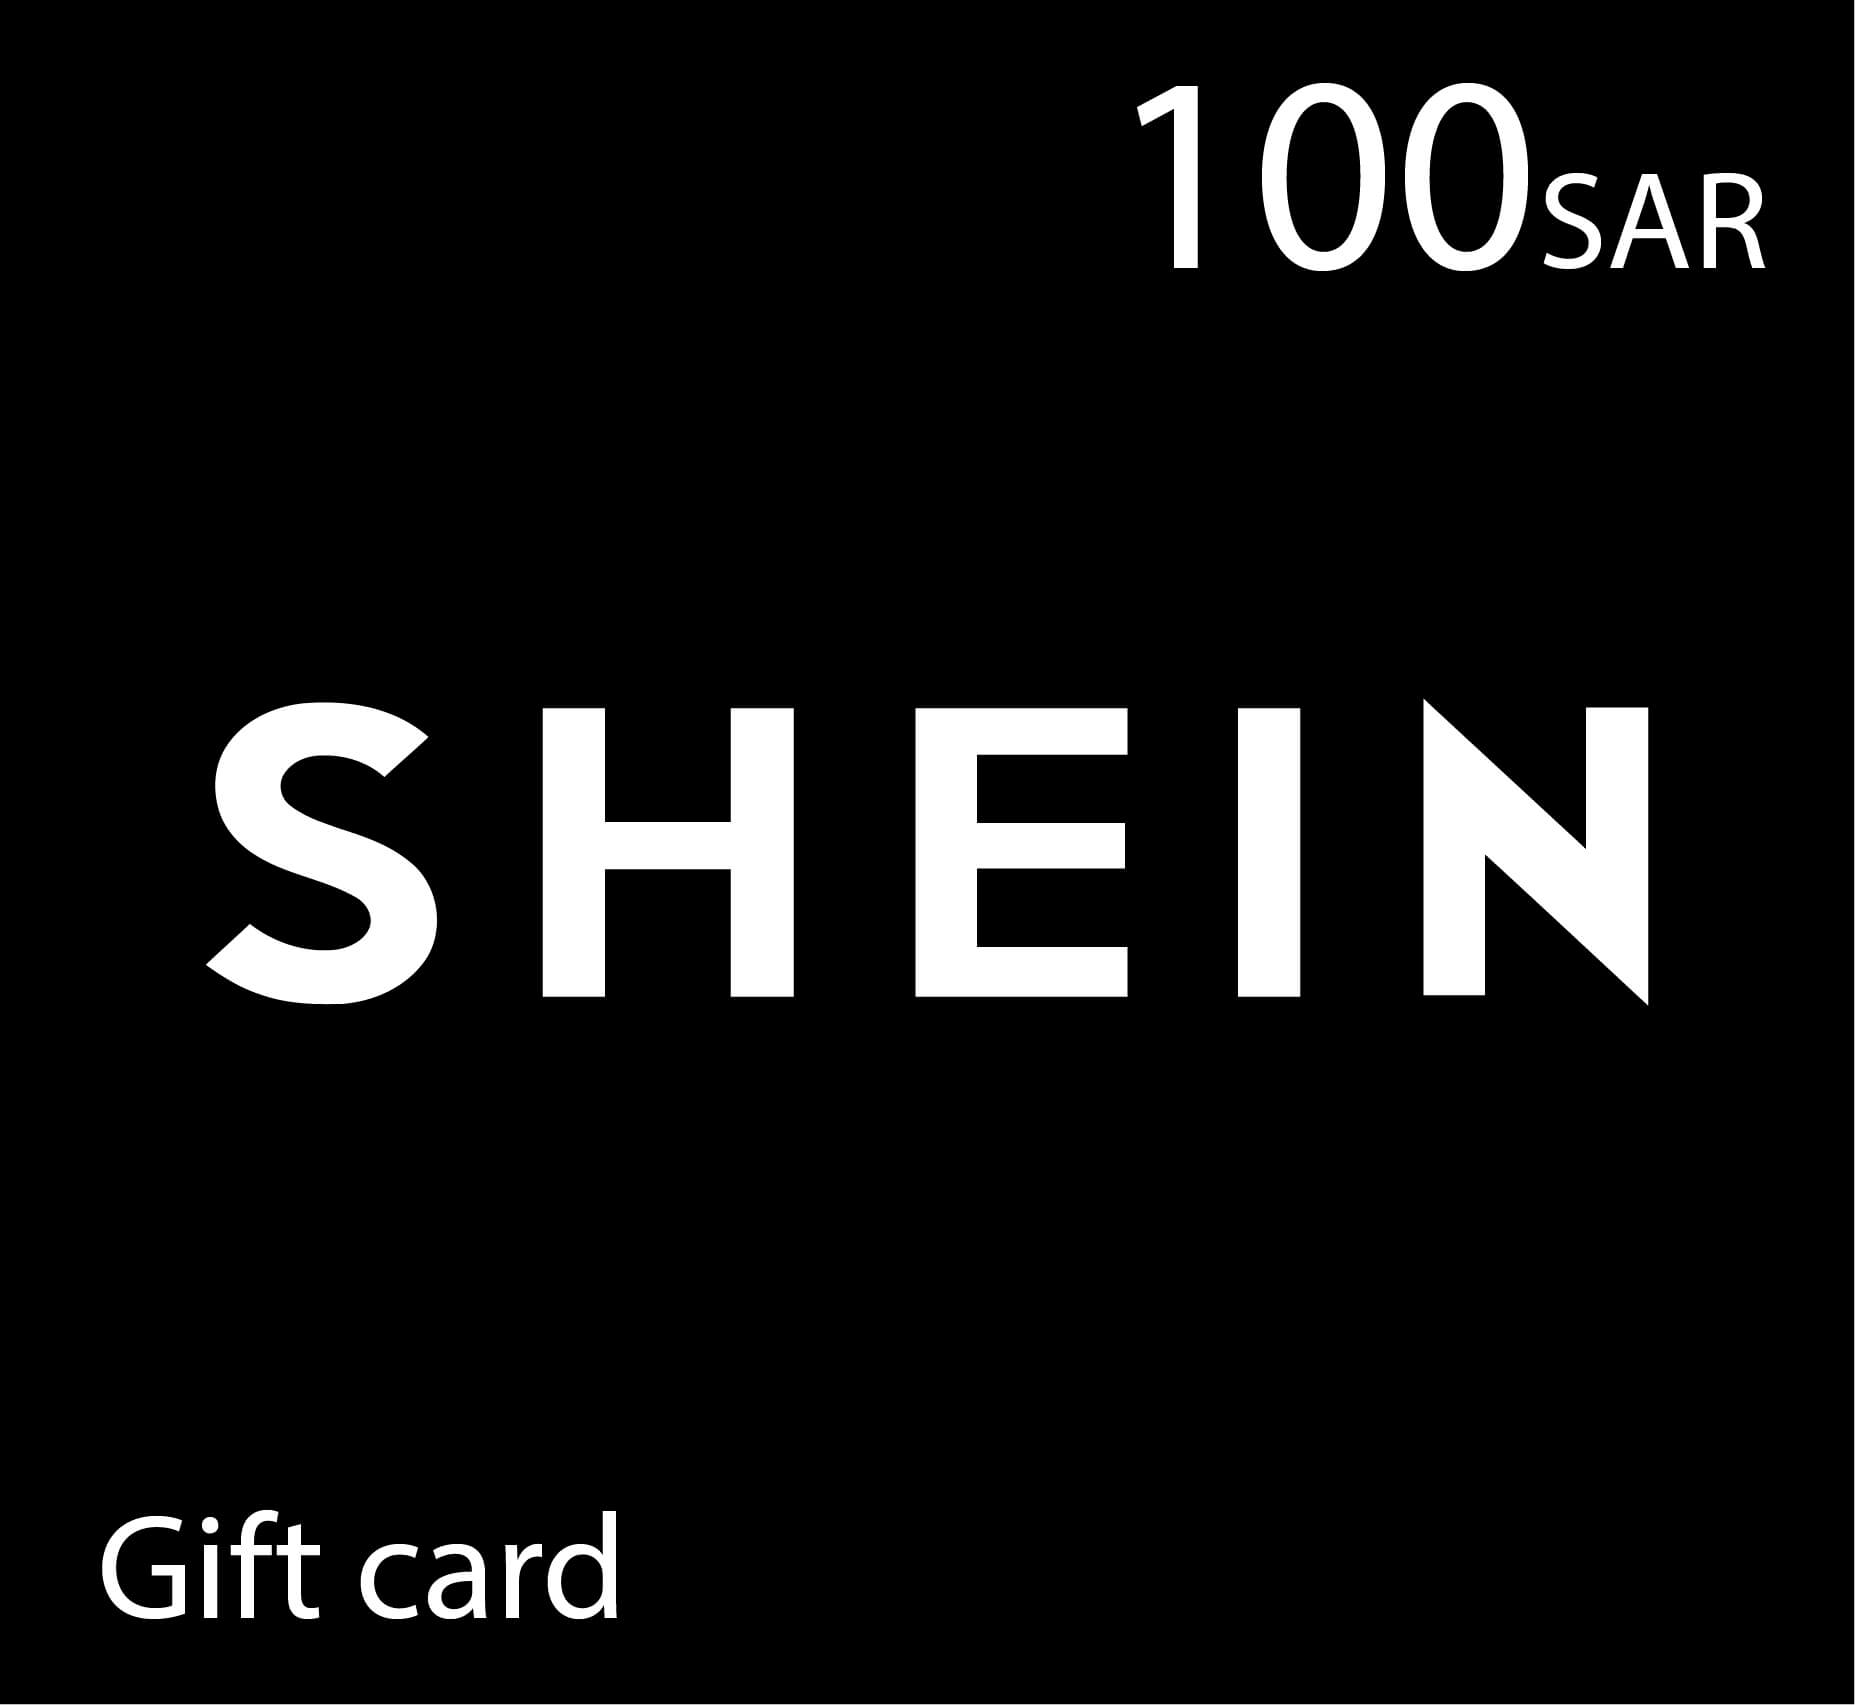 Shein Gift Card - 100 SAR